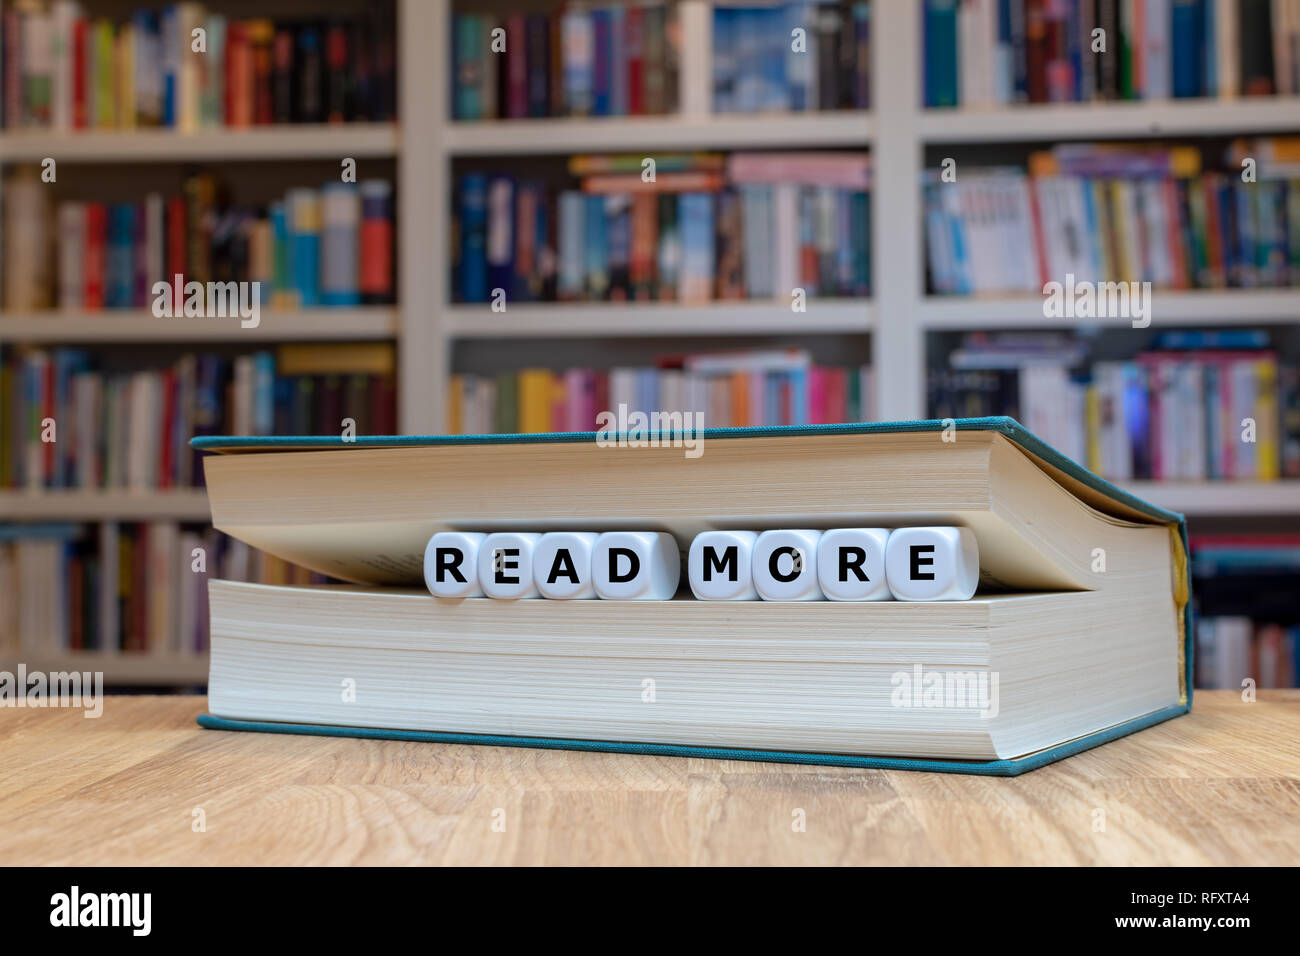 Würfel in Buchform, die Wörter "Anzeige mehr'. Buch liegt auf einem hölzernen Schreibtisch vor einem Bücherregal. Stockfoto